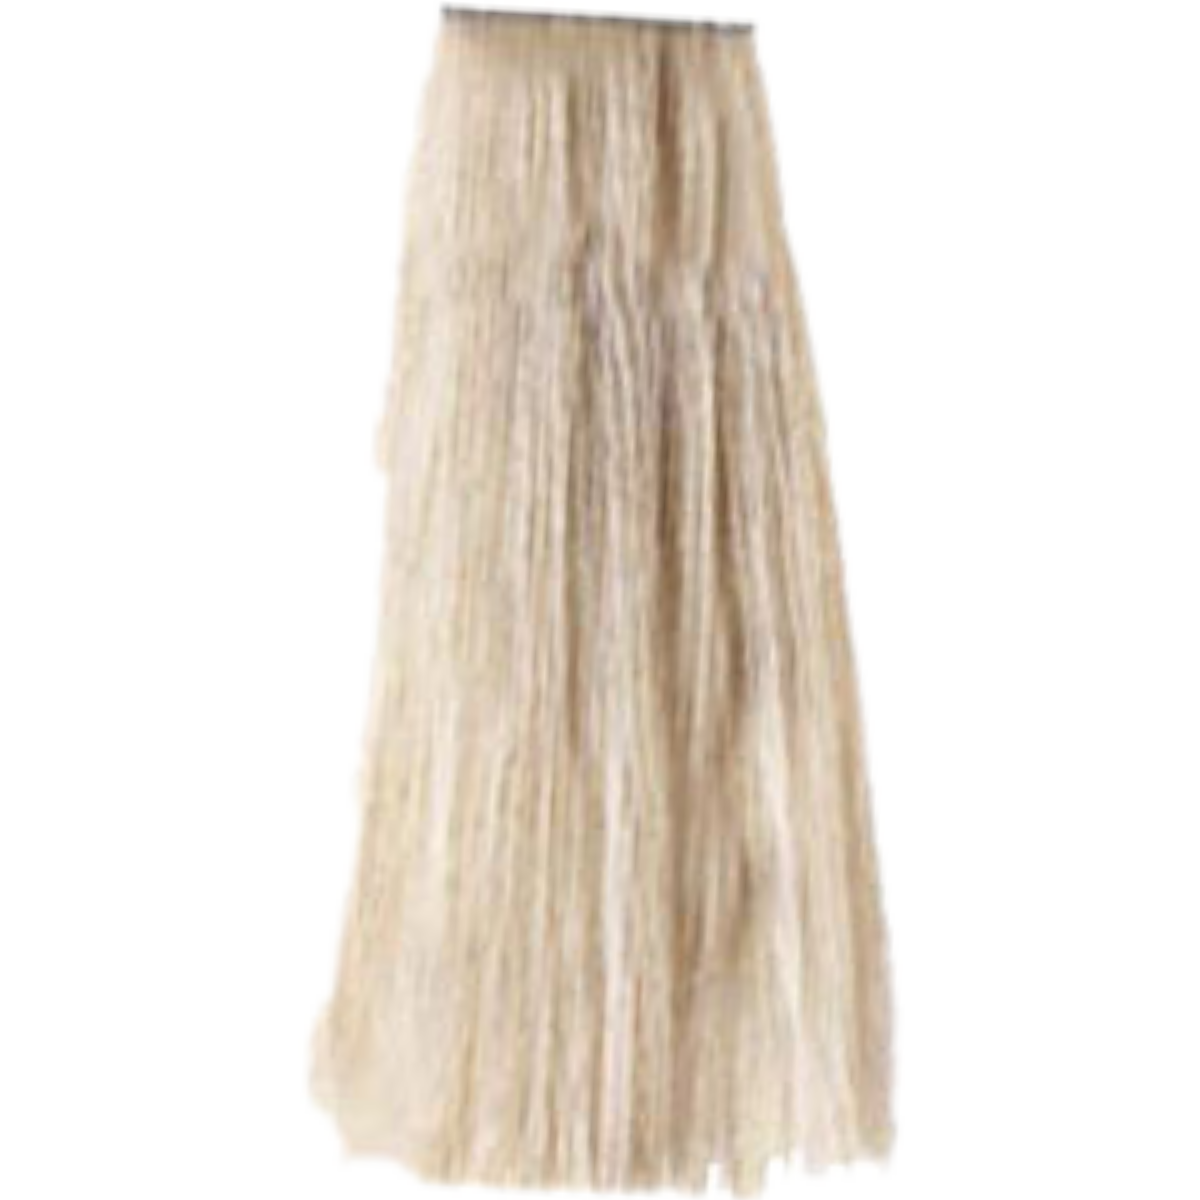 צבע שיער בסיס 10.0 NATURALS PLATINUM BLONDE פארמויטה FarmaVita צבע לשיער 100 גרם